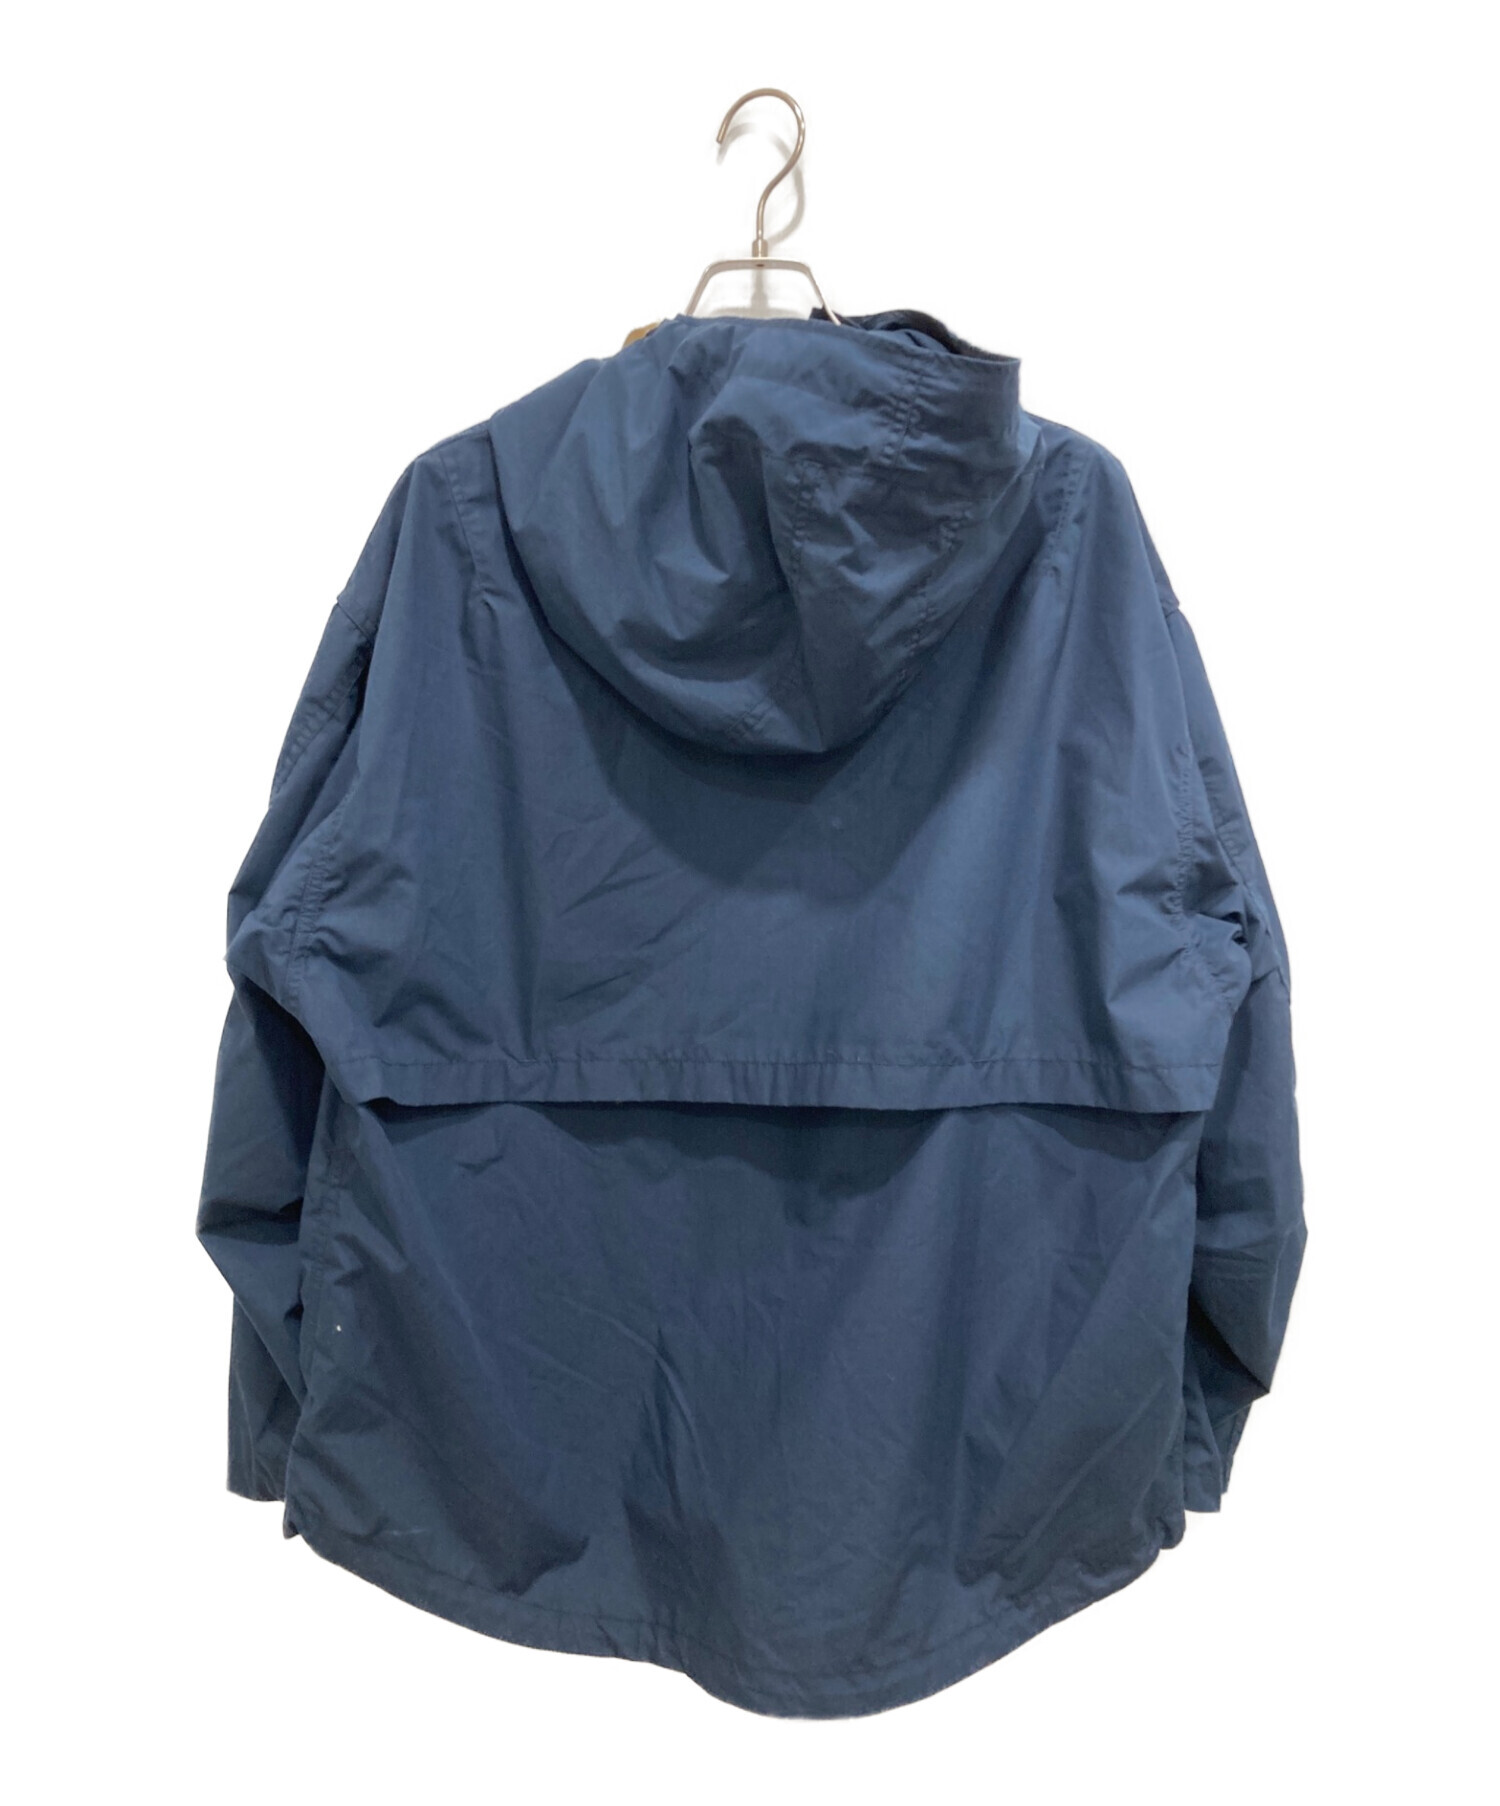 中古・古着通販】nanamica (ナナミカ) Hooded Jacket ネイビー サイズ 